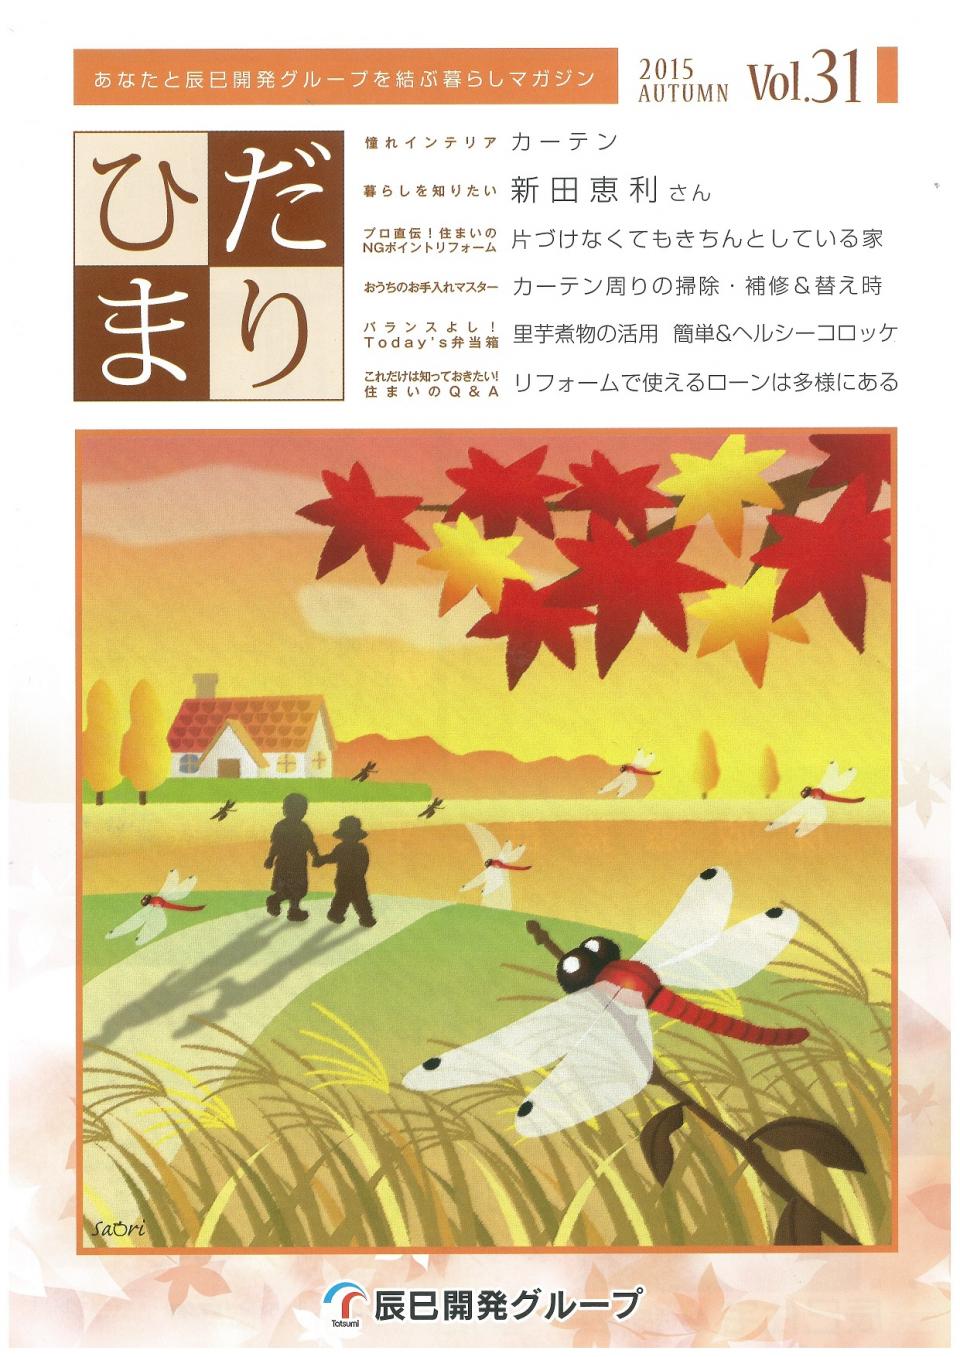 ひだまり 2015 Autumn vol.31